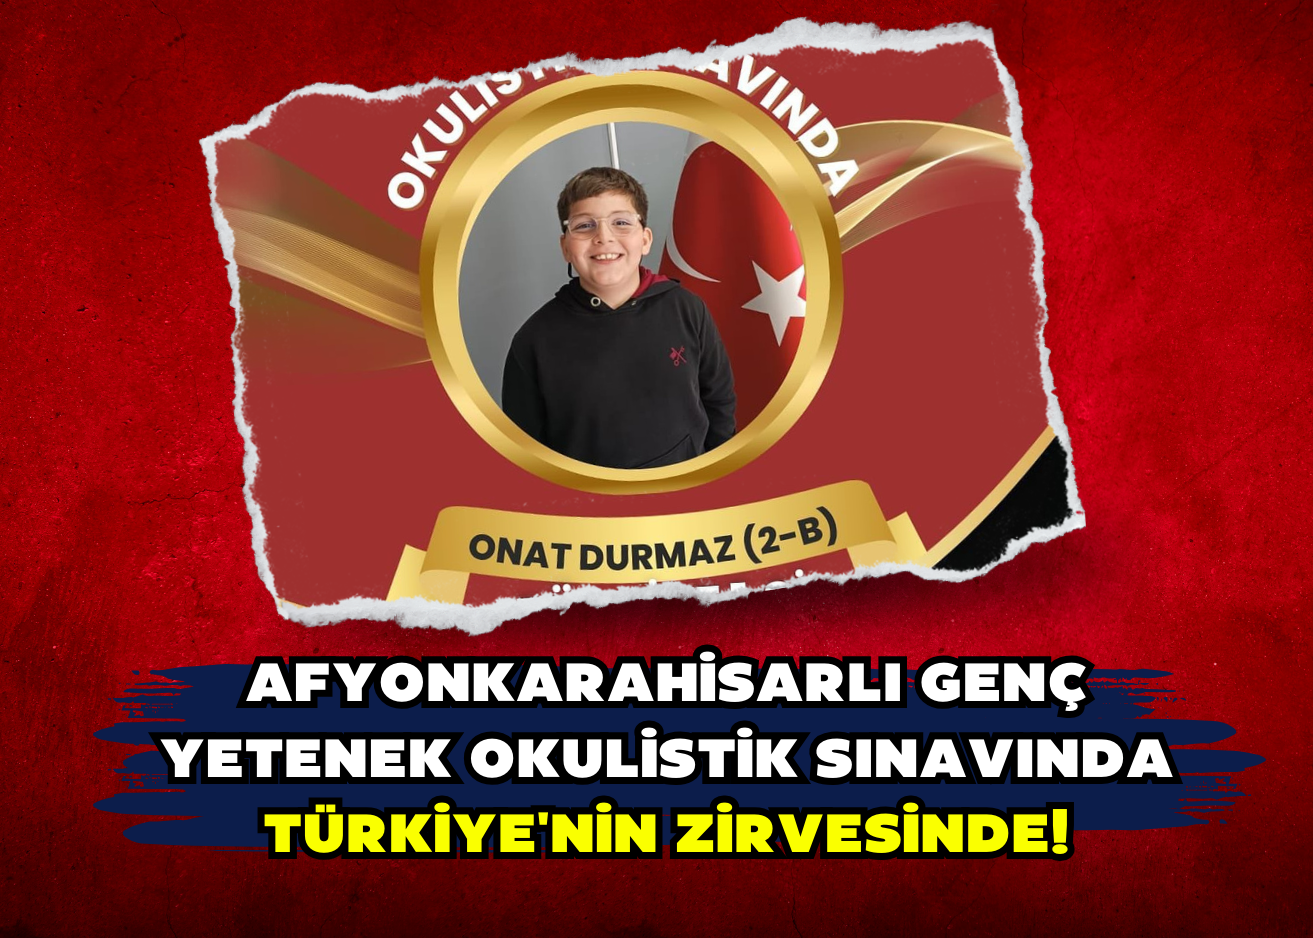 Afyonkarahisarlı Genç Yetenek OKULİSTİK Sınavında Türkiye'nin Zirvesinde!